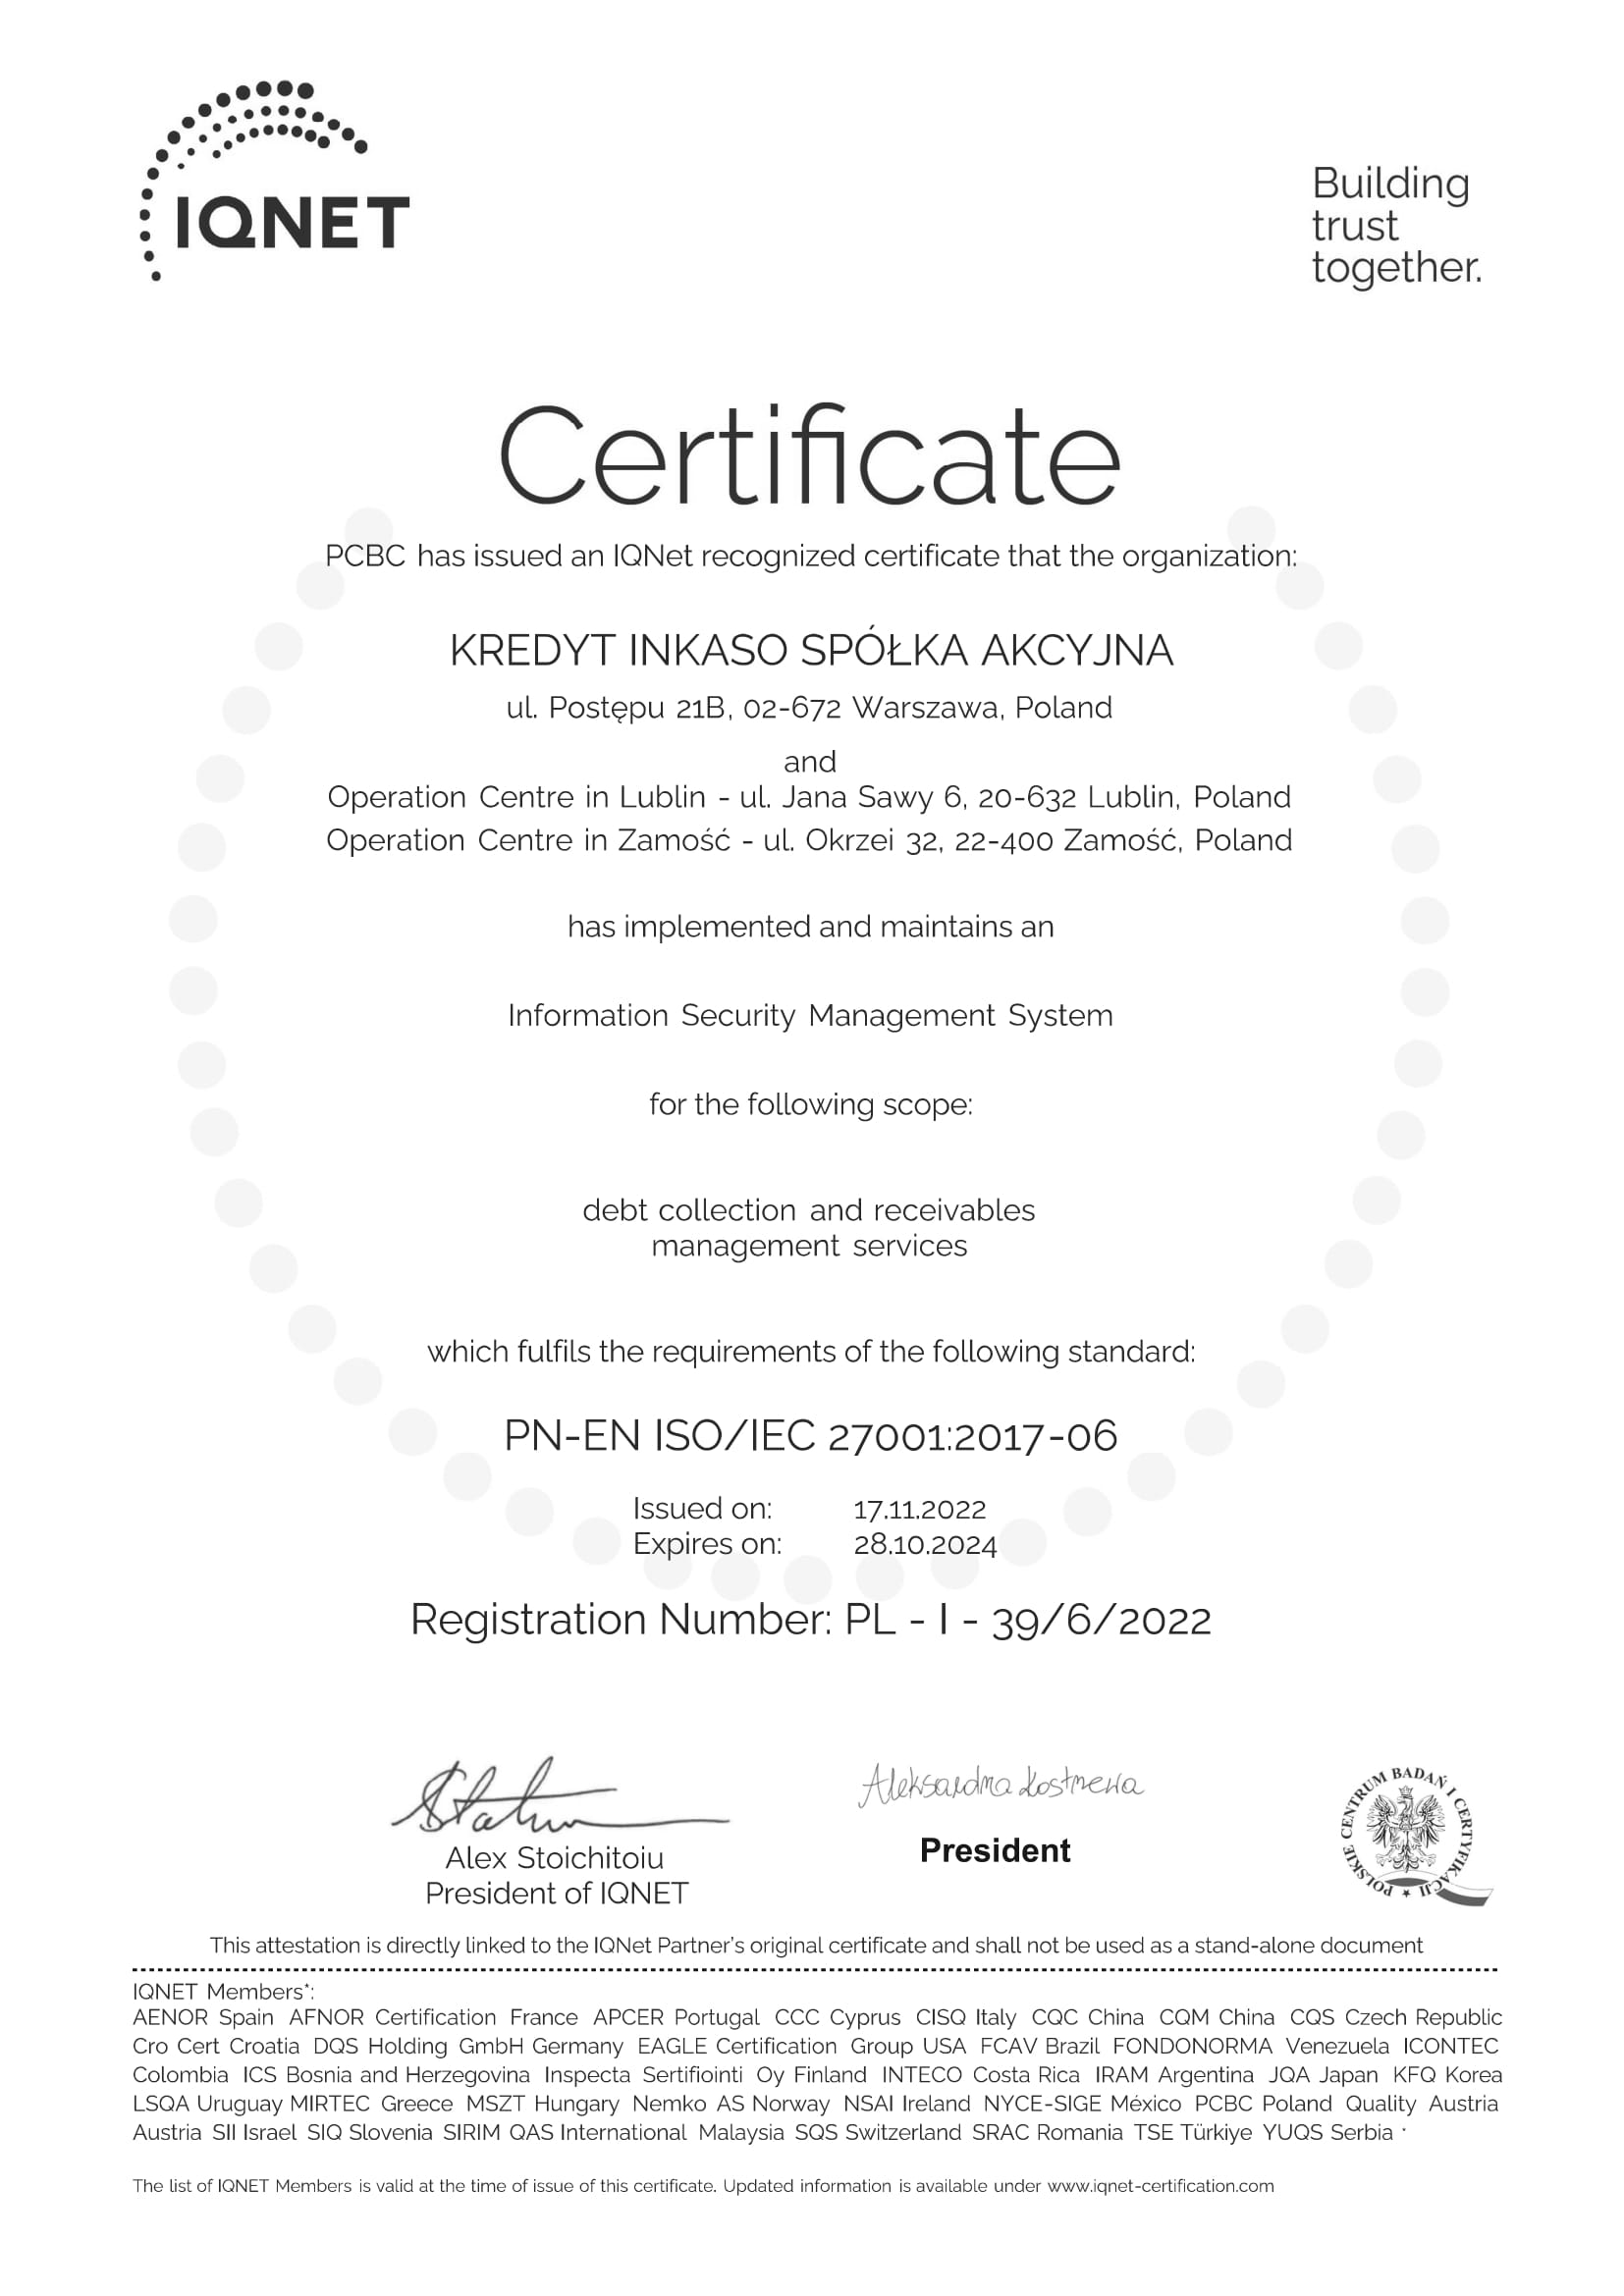 Kredyt Inkaso - certyfikat